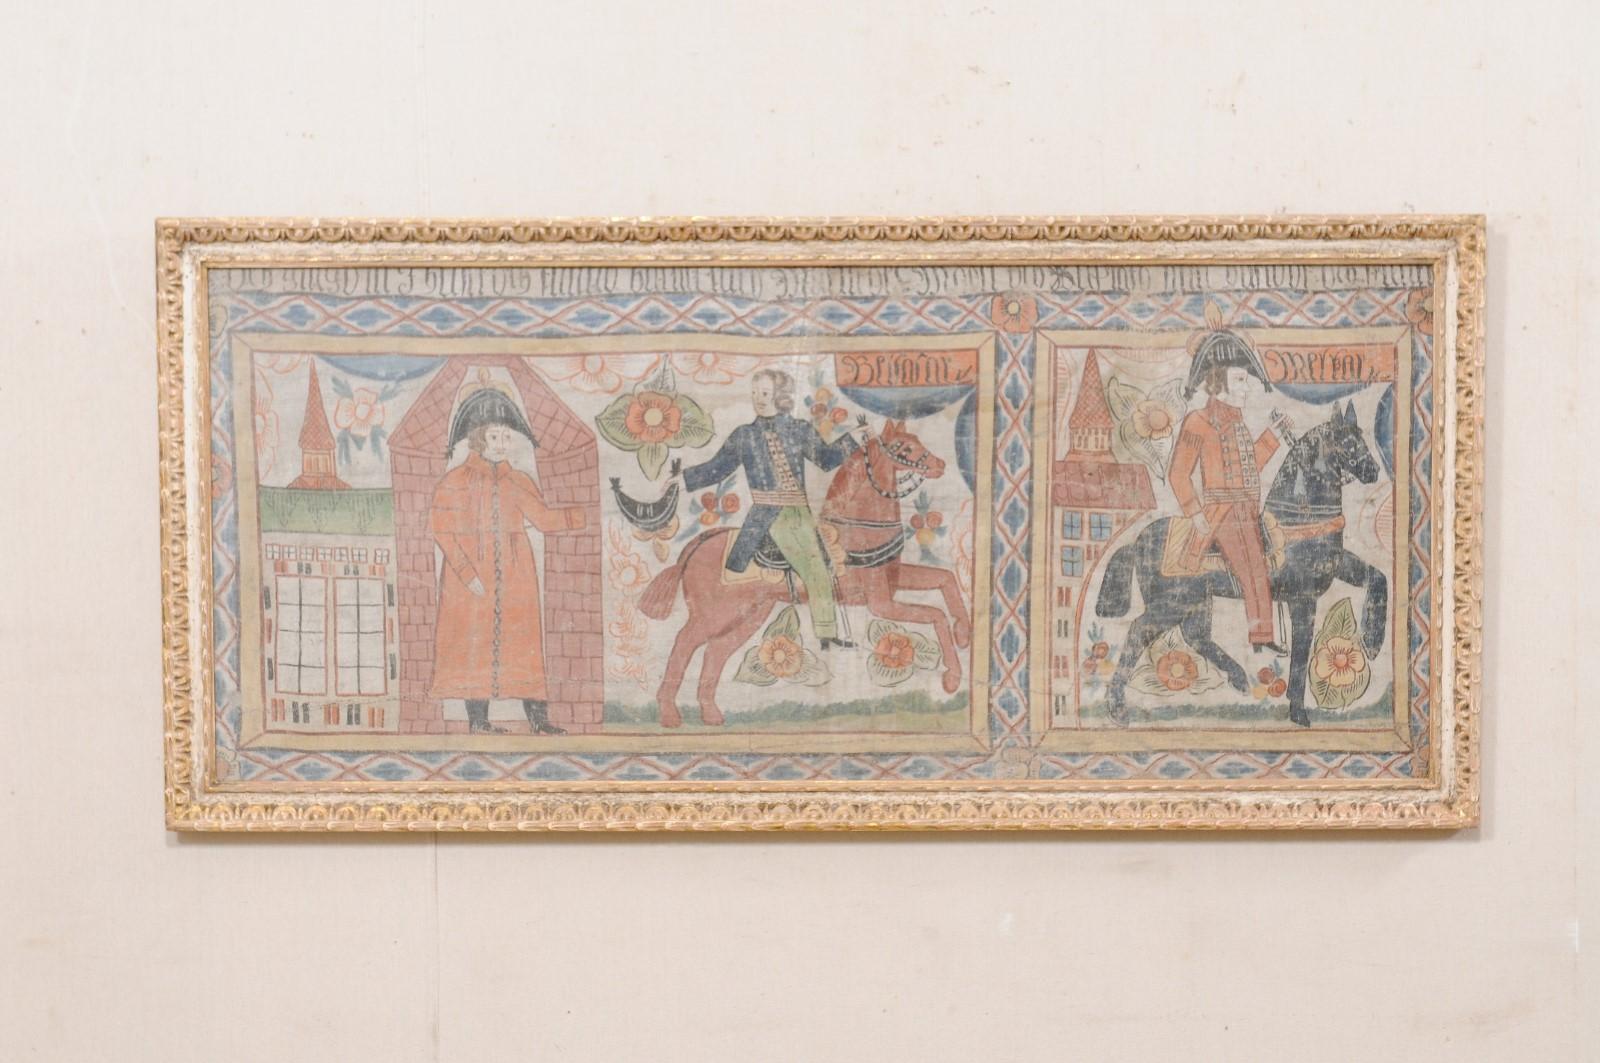 Pièce d'art décorative présentant un tissu suédois du XIXe siècle placé derrière une vitre dans un cadre en bois sculpté. Ce tissu suédois du XIXe siècle, de style primitif, représentant des personnages masculins à cheval, ainsi que divers paysages